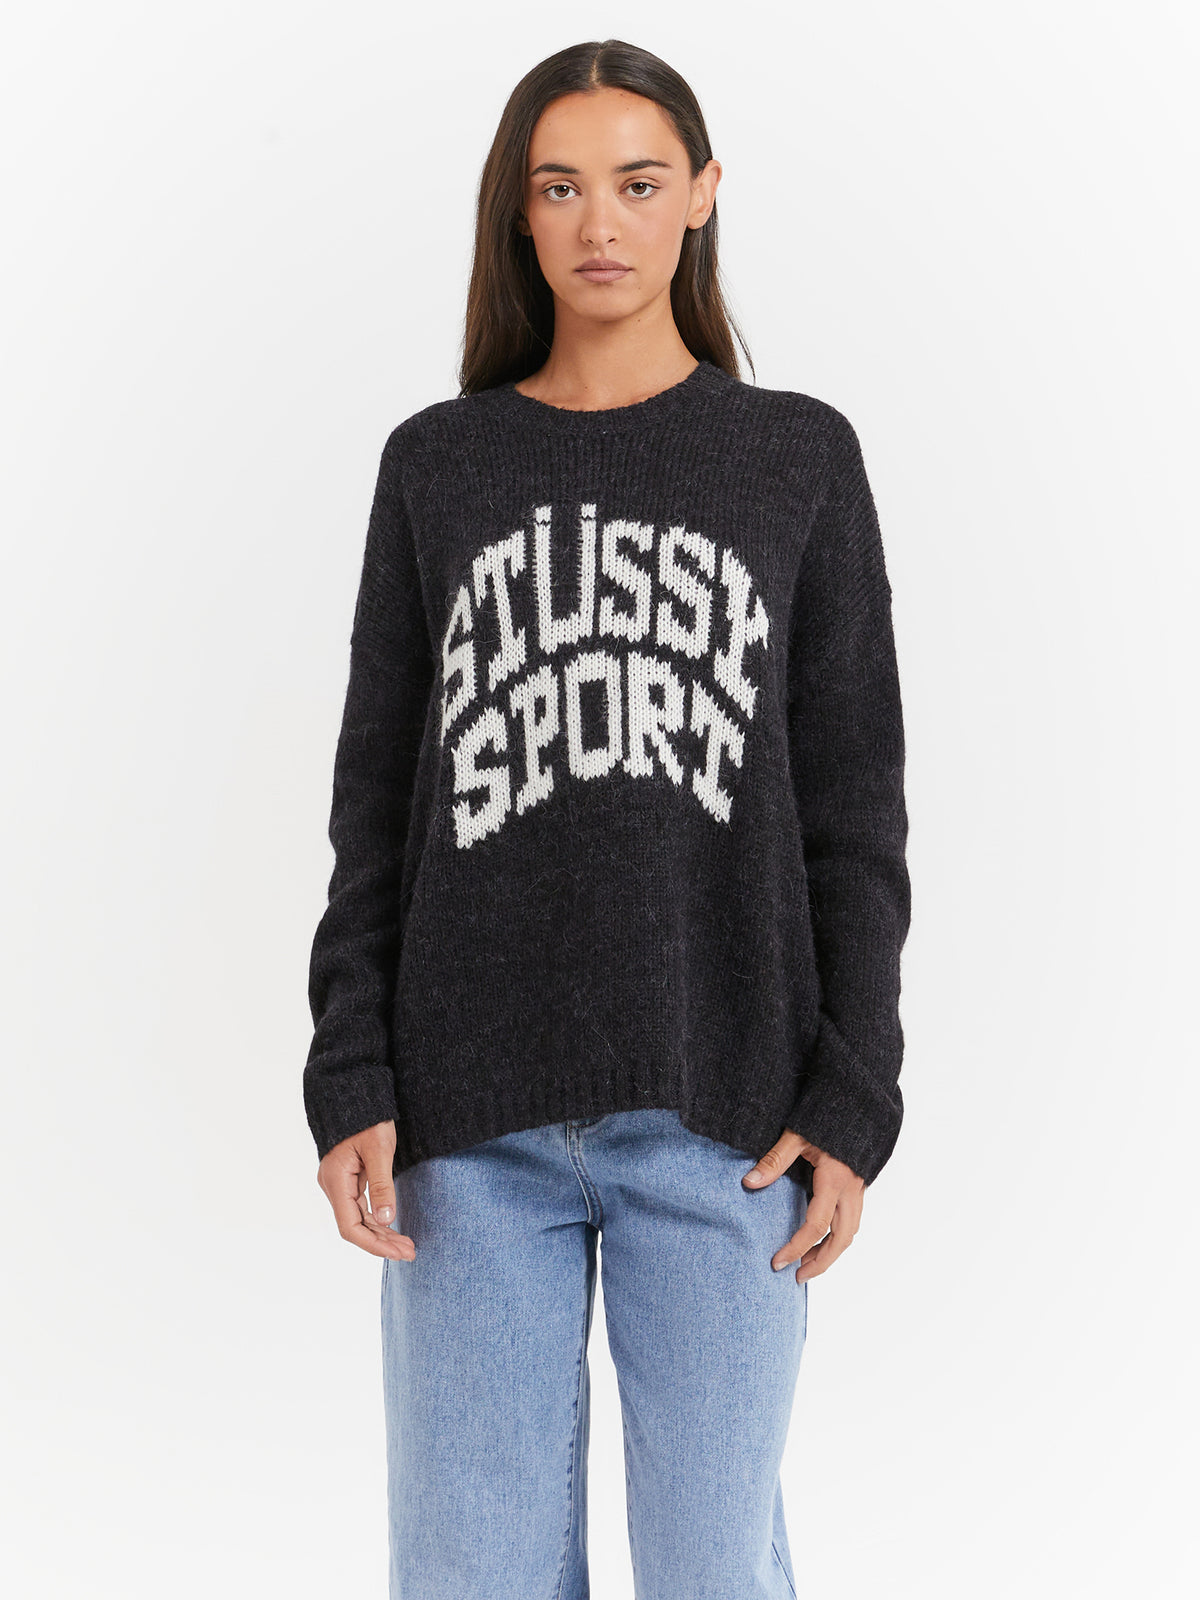 Stussy Sport Knit in Black